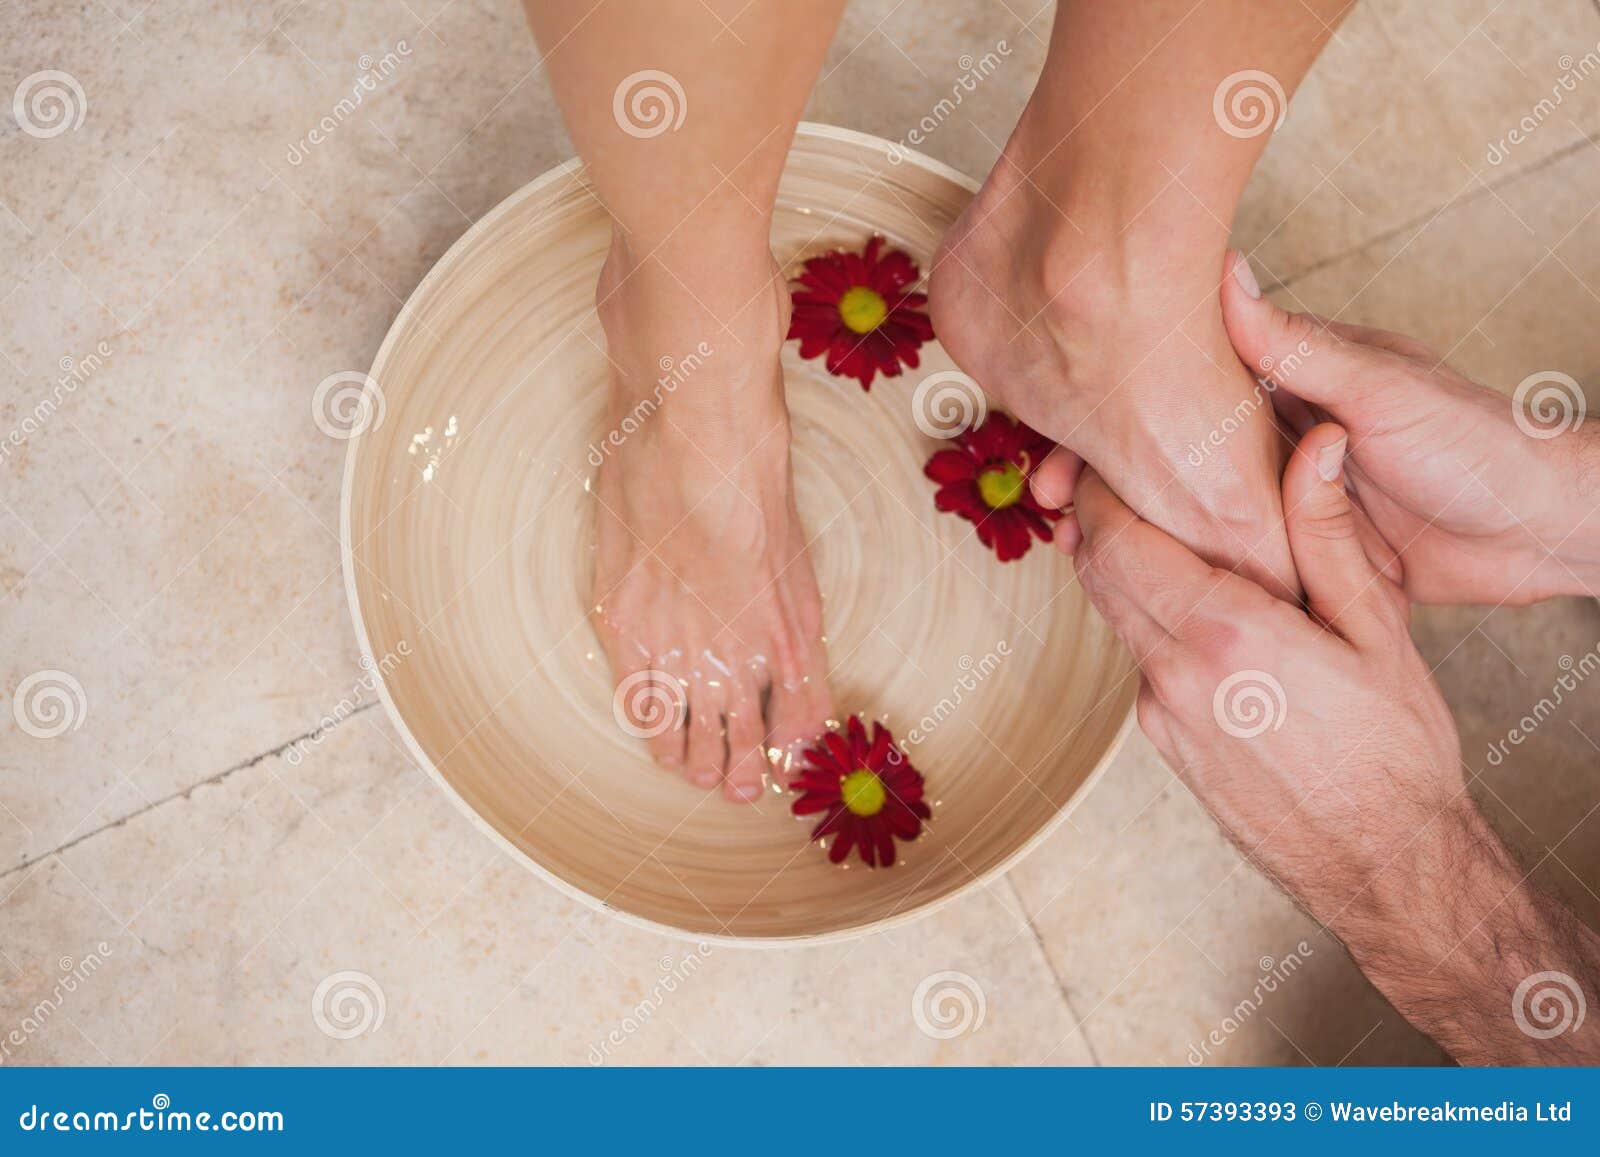 Мыть ноги мужчине. Мытье ног женщине. Женщина моет ноги. Девушка моет ноги.